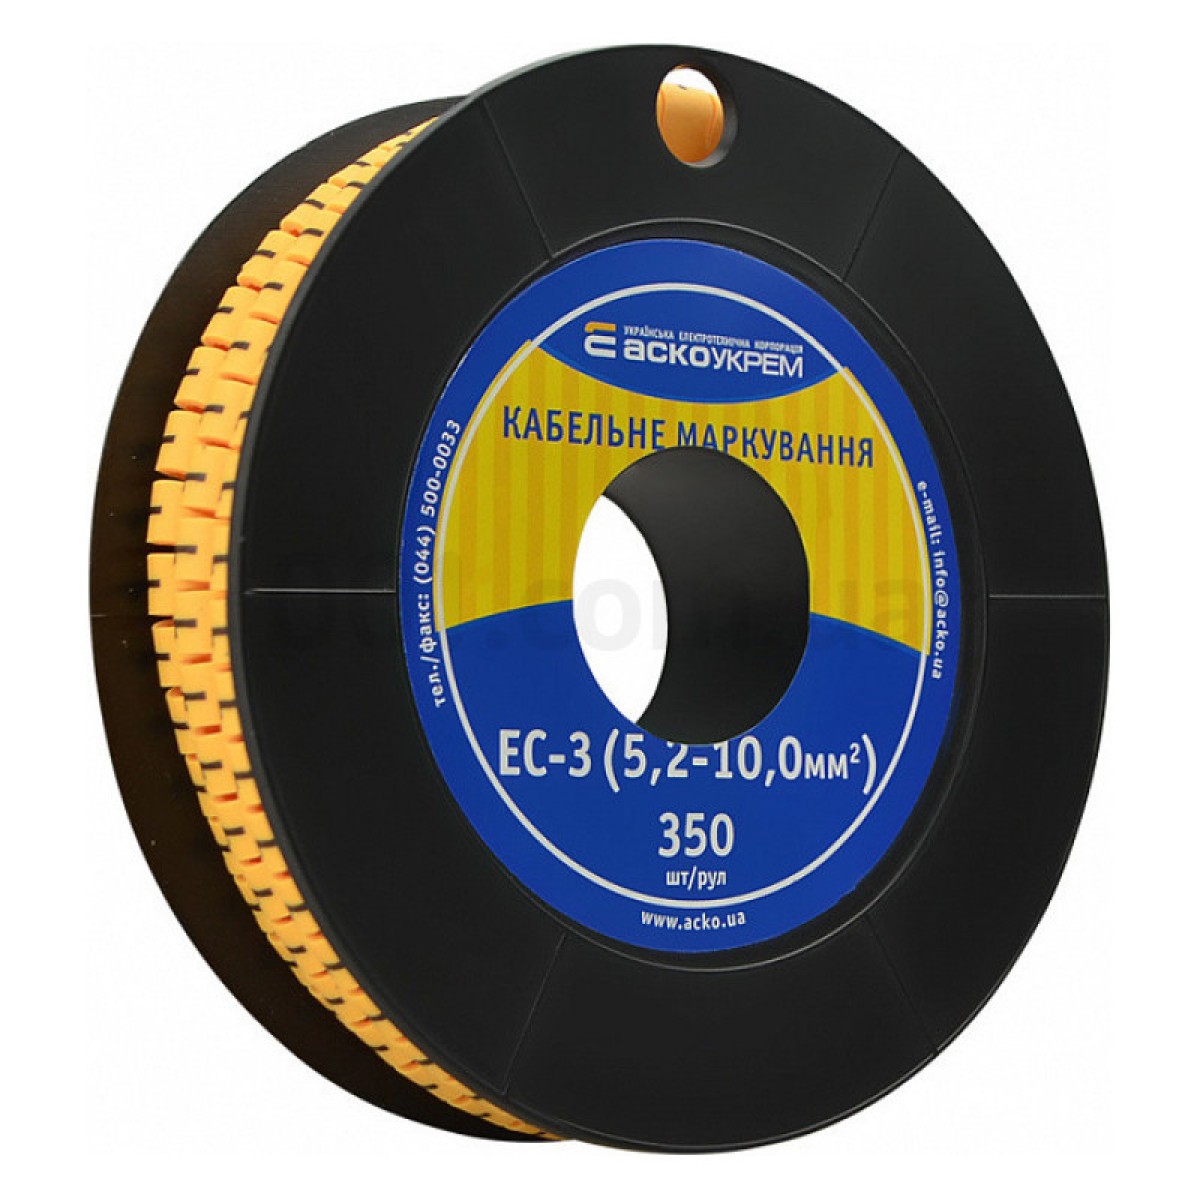 Маркировка EC-3 для кабеля 5,2-10,0 мм² символ «1» (рулон 250 шт.), АСКО-УКРЕМ 256_256.jpg